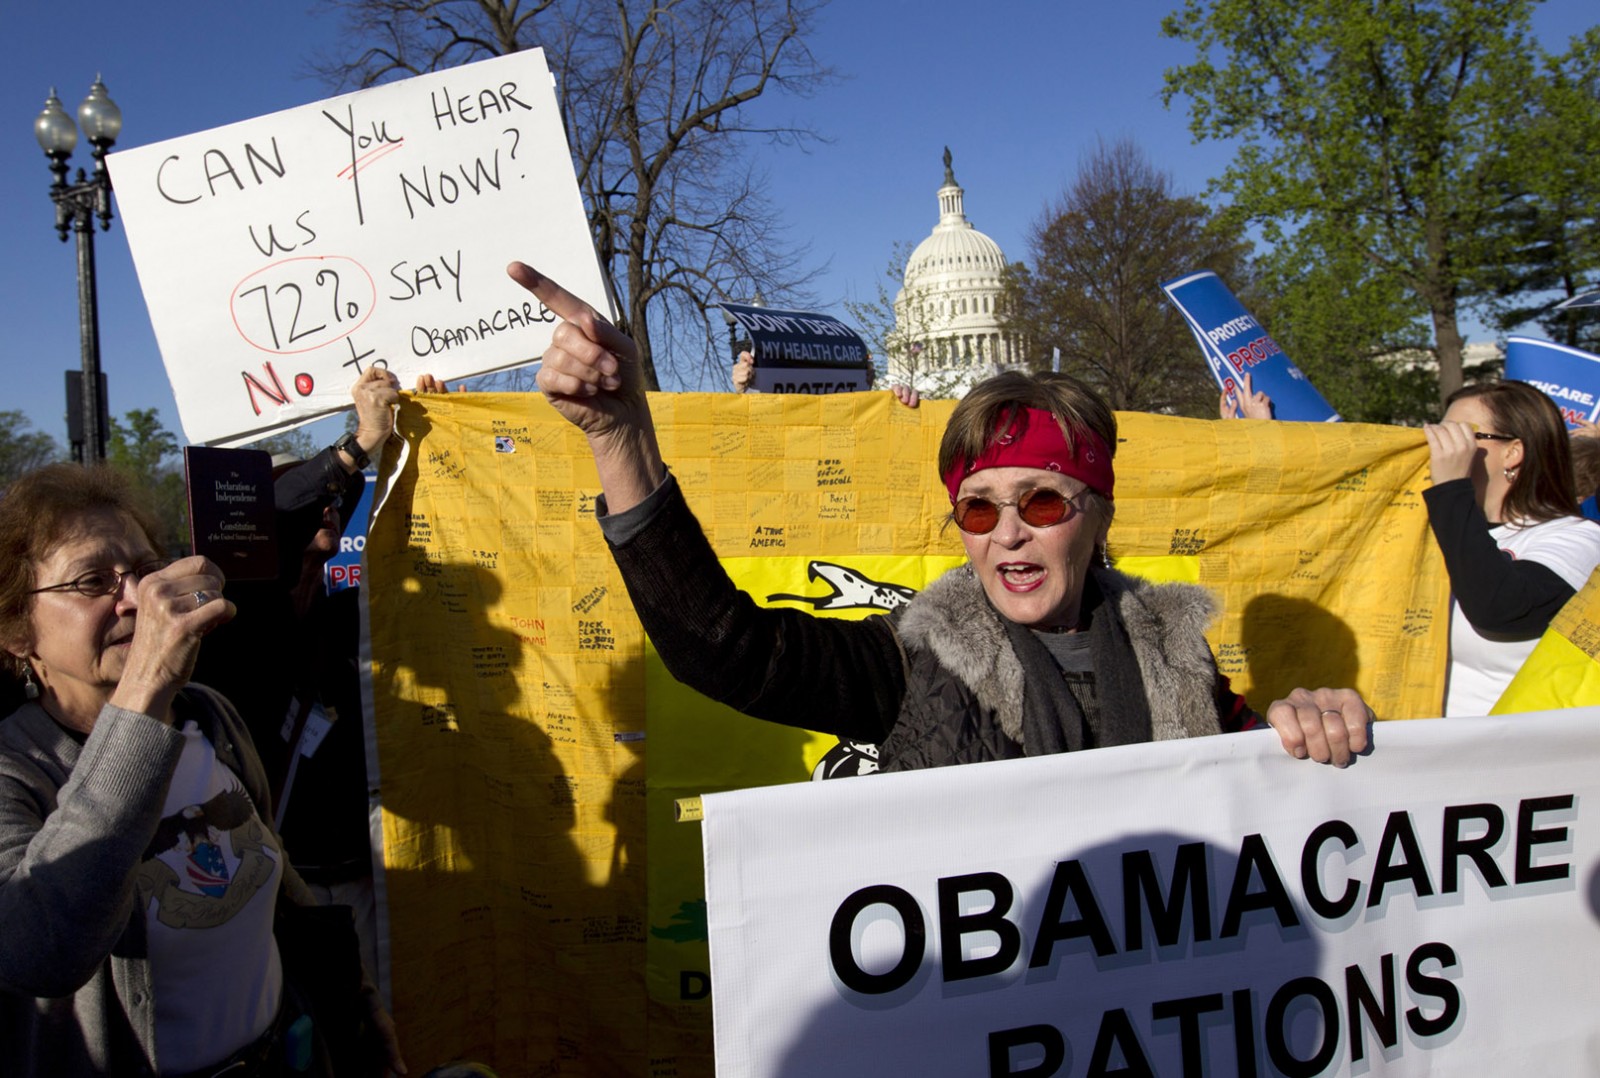 מפגינים נגד תכנית "אובמה קר" מחוץ לבית המשפט האמריקאי (צילום: AP)